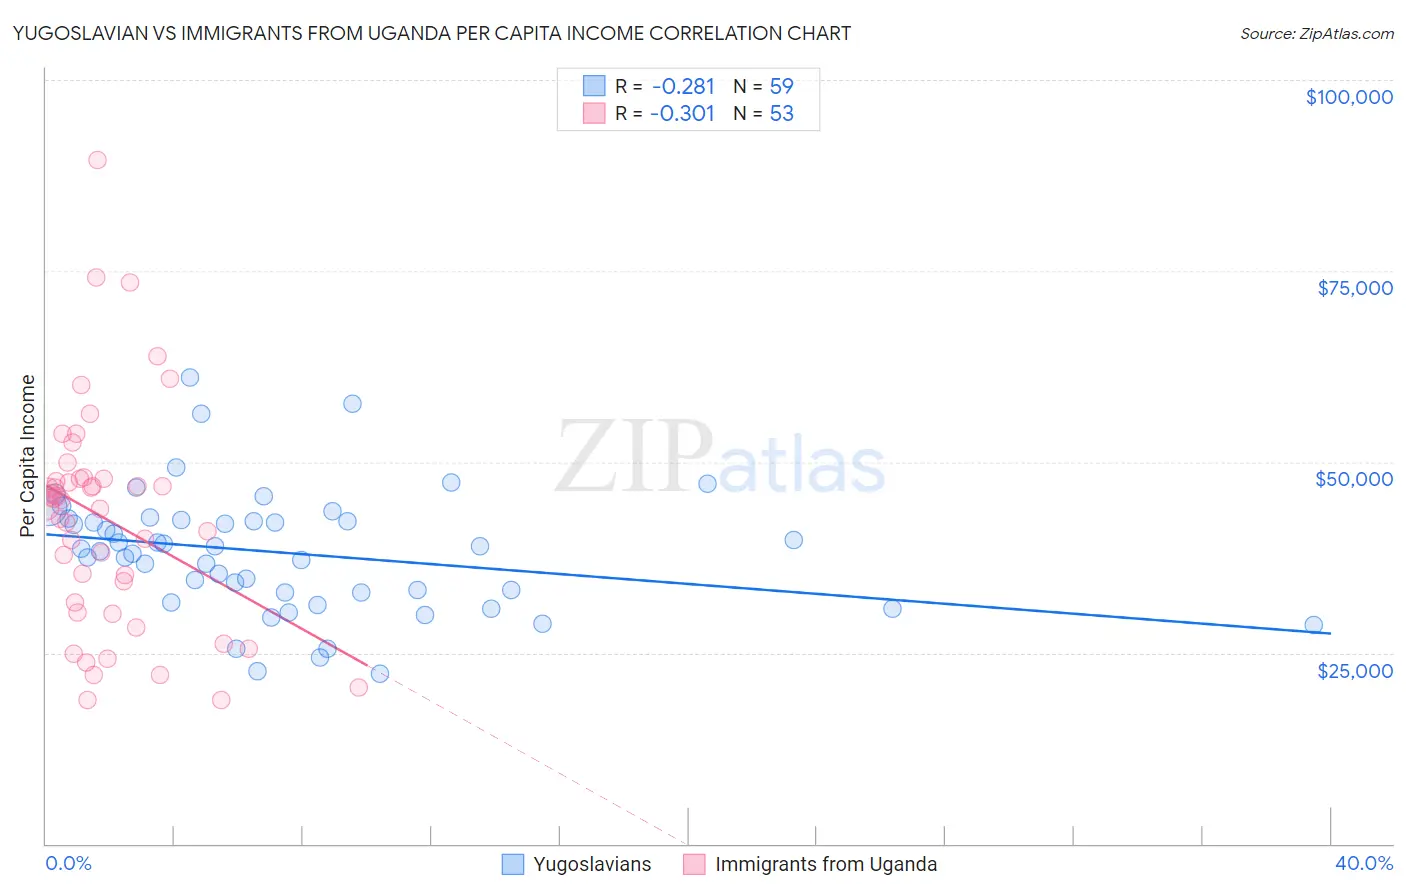 Yugoslavian vs Immigrants from Uganda Per Capita Income